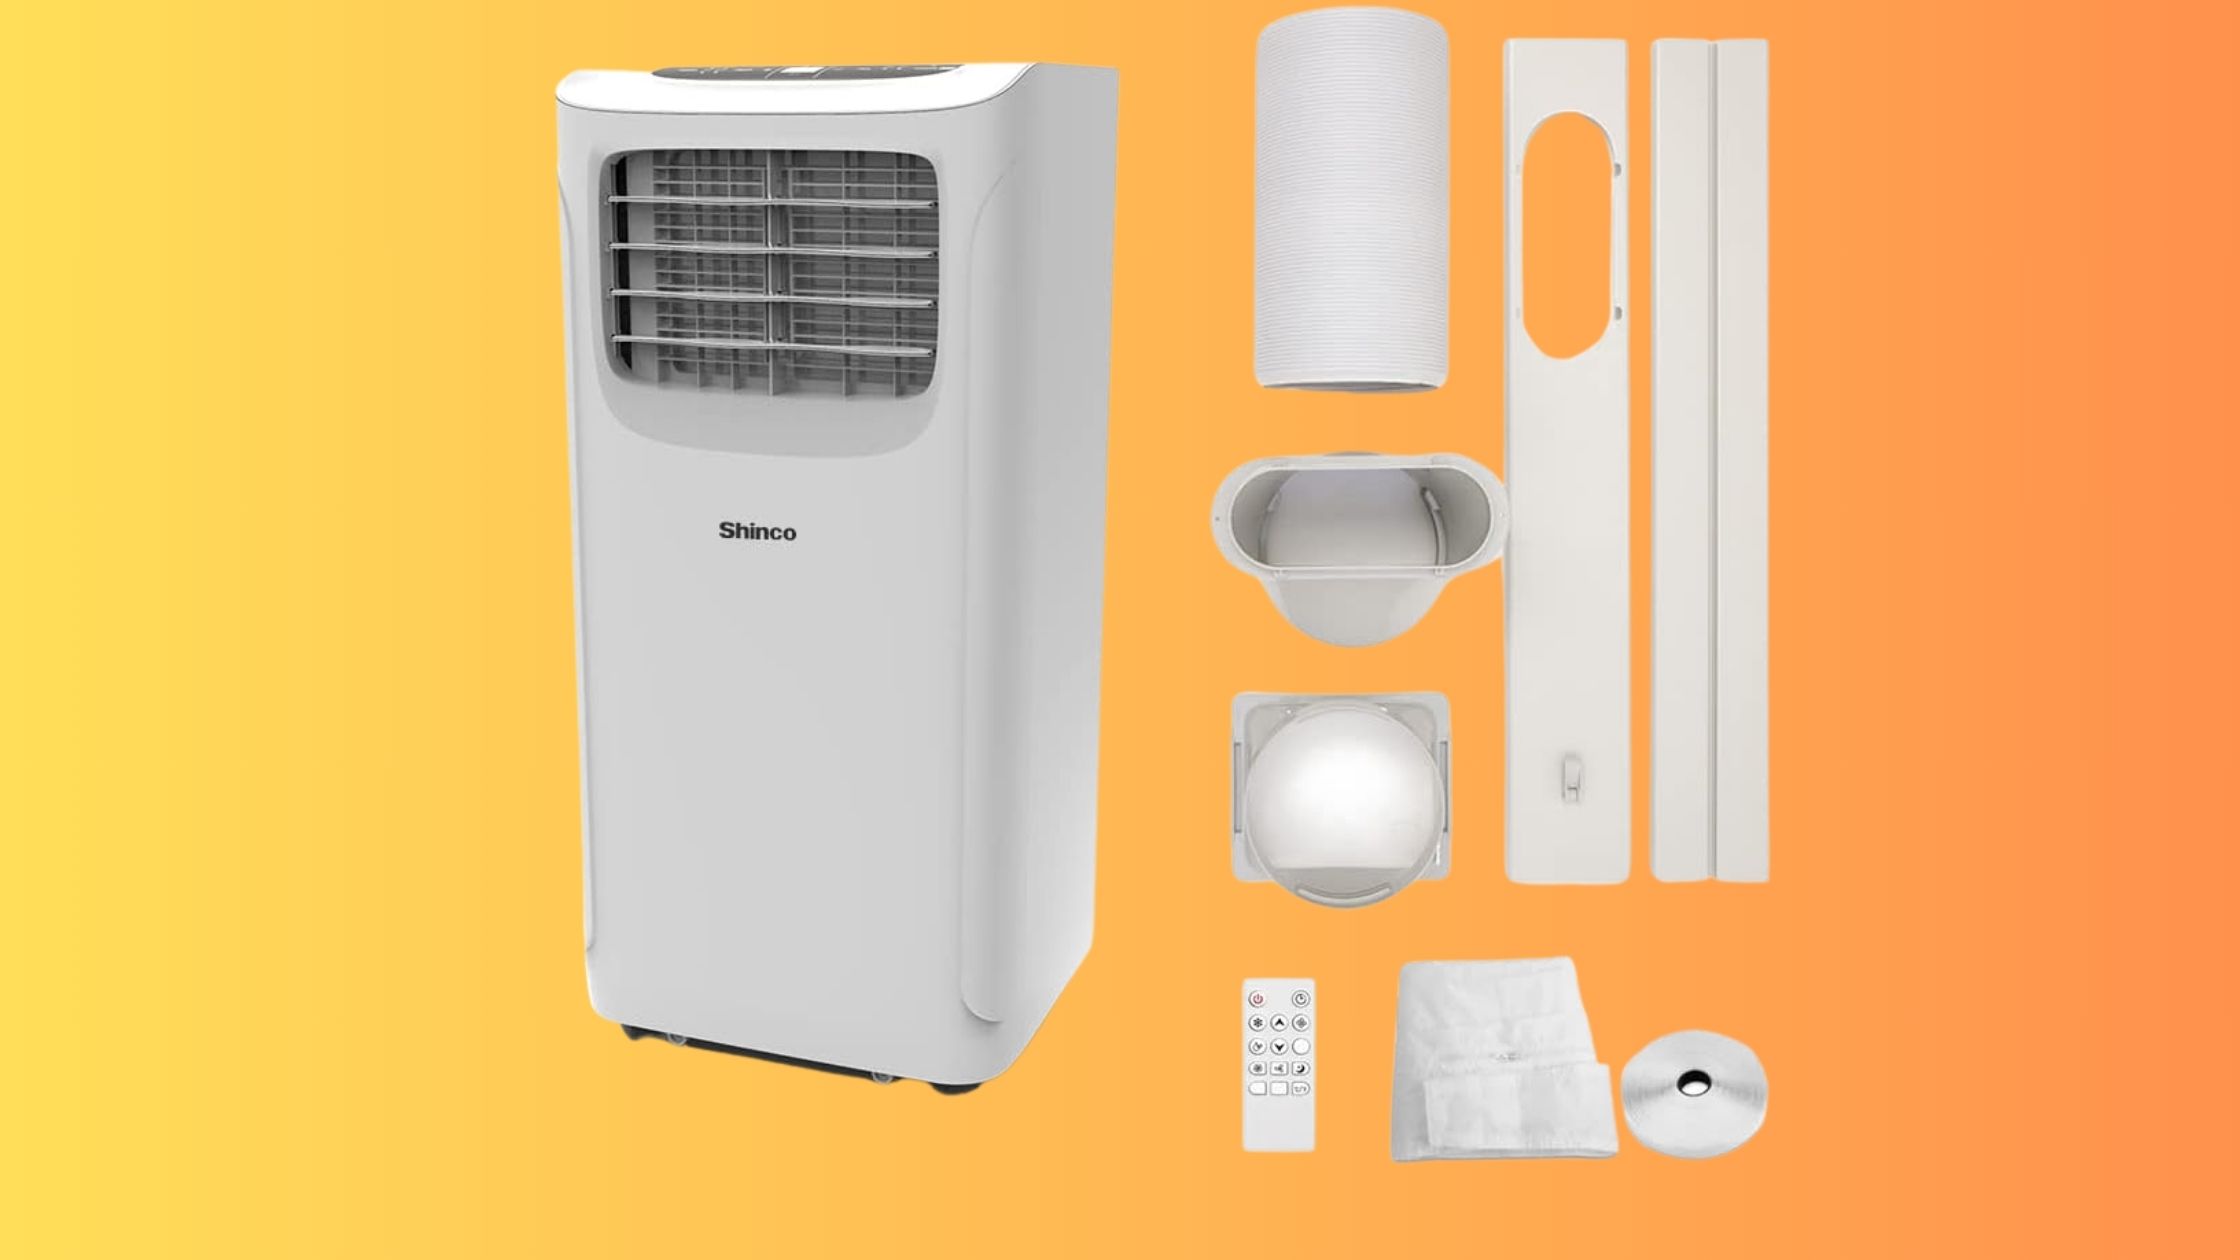 Le climatiseur mobile SHINCO : à saisir d'urgence durant le Prime Day pour lutter contre la chaleur estivale © Amazon